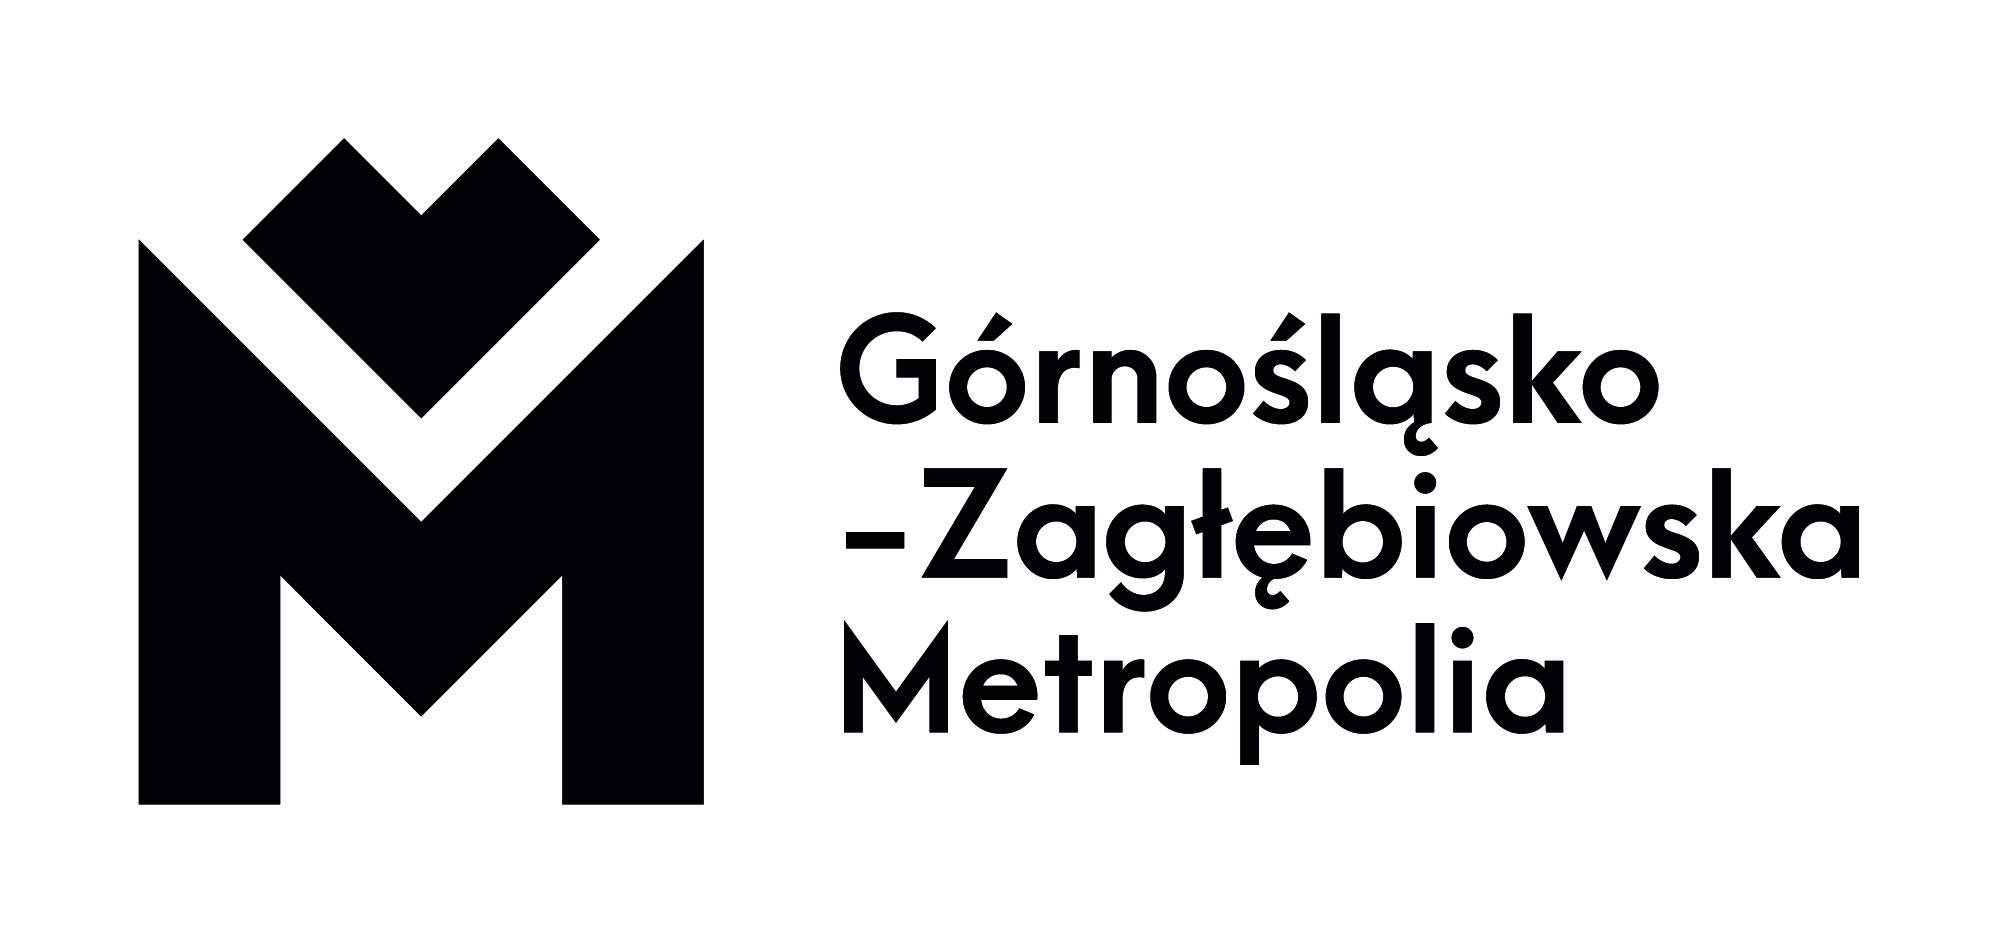 Logotyp Górnośląsko-Zagłębiowskiej Metropolii, czarno-biały